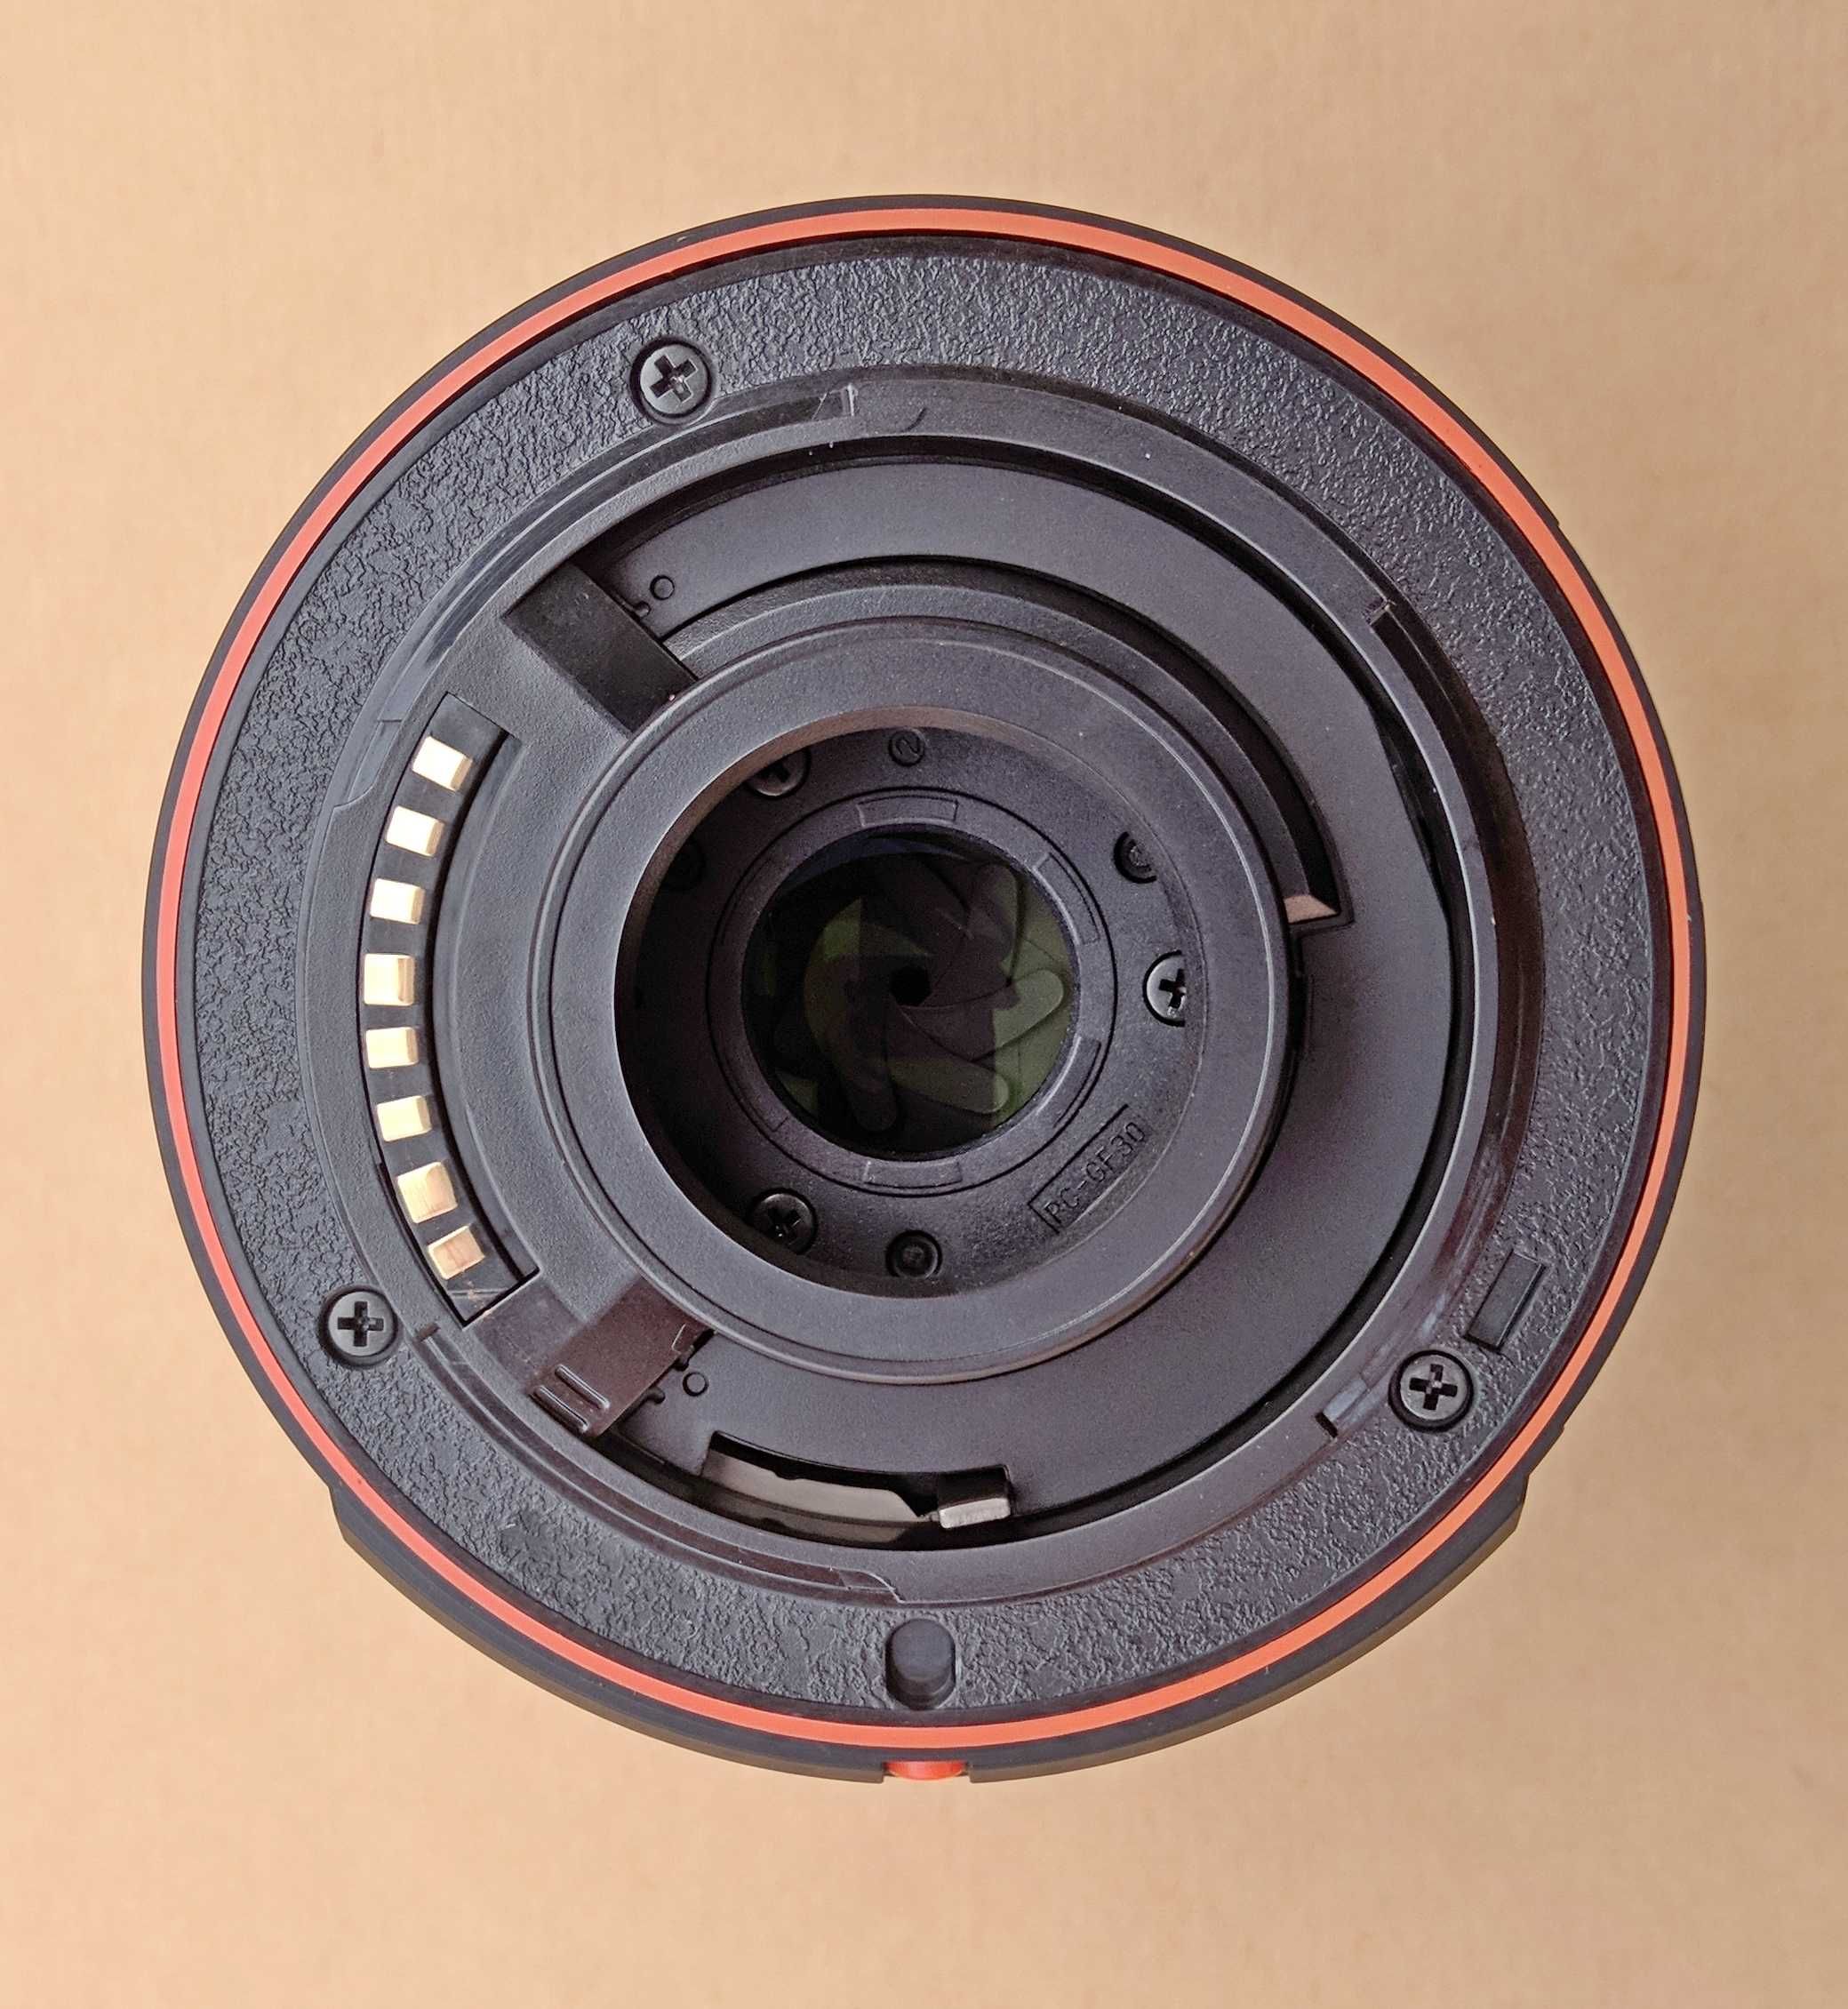 Фотооб'єктив Sony α 230 DT 18-55 mm f/3.5-5.6 (SAL-1855)